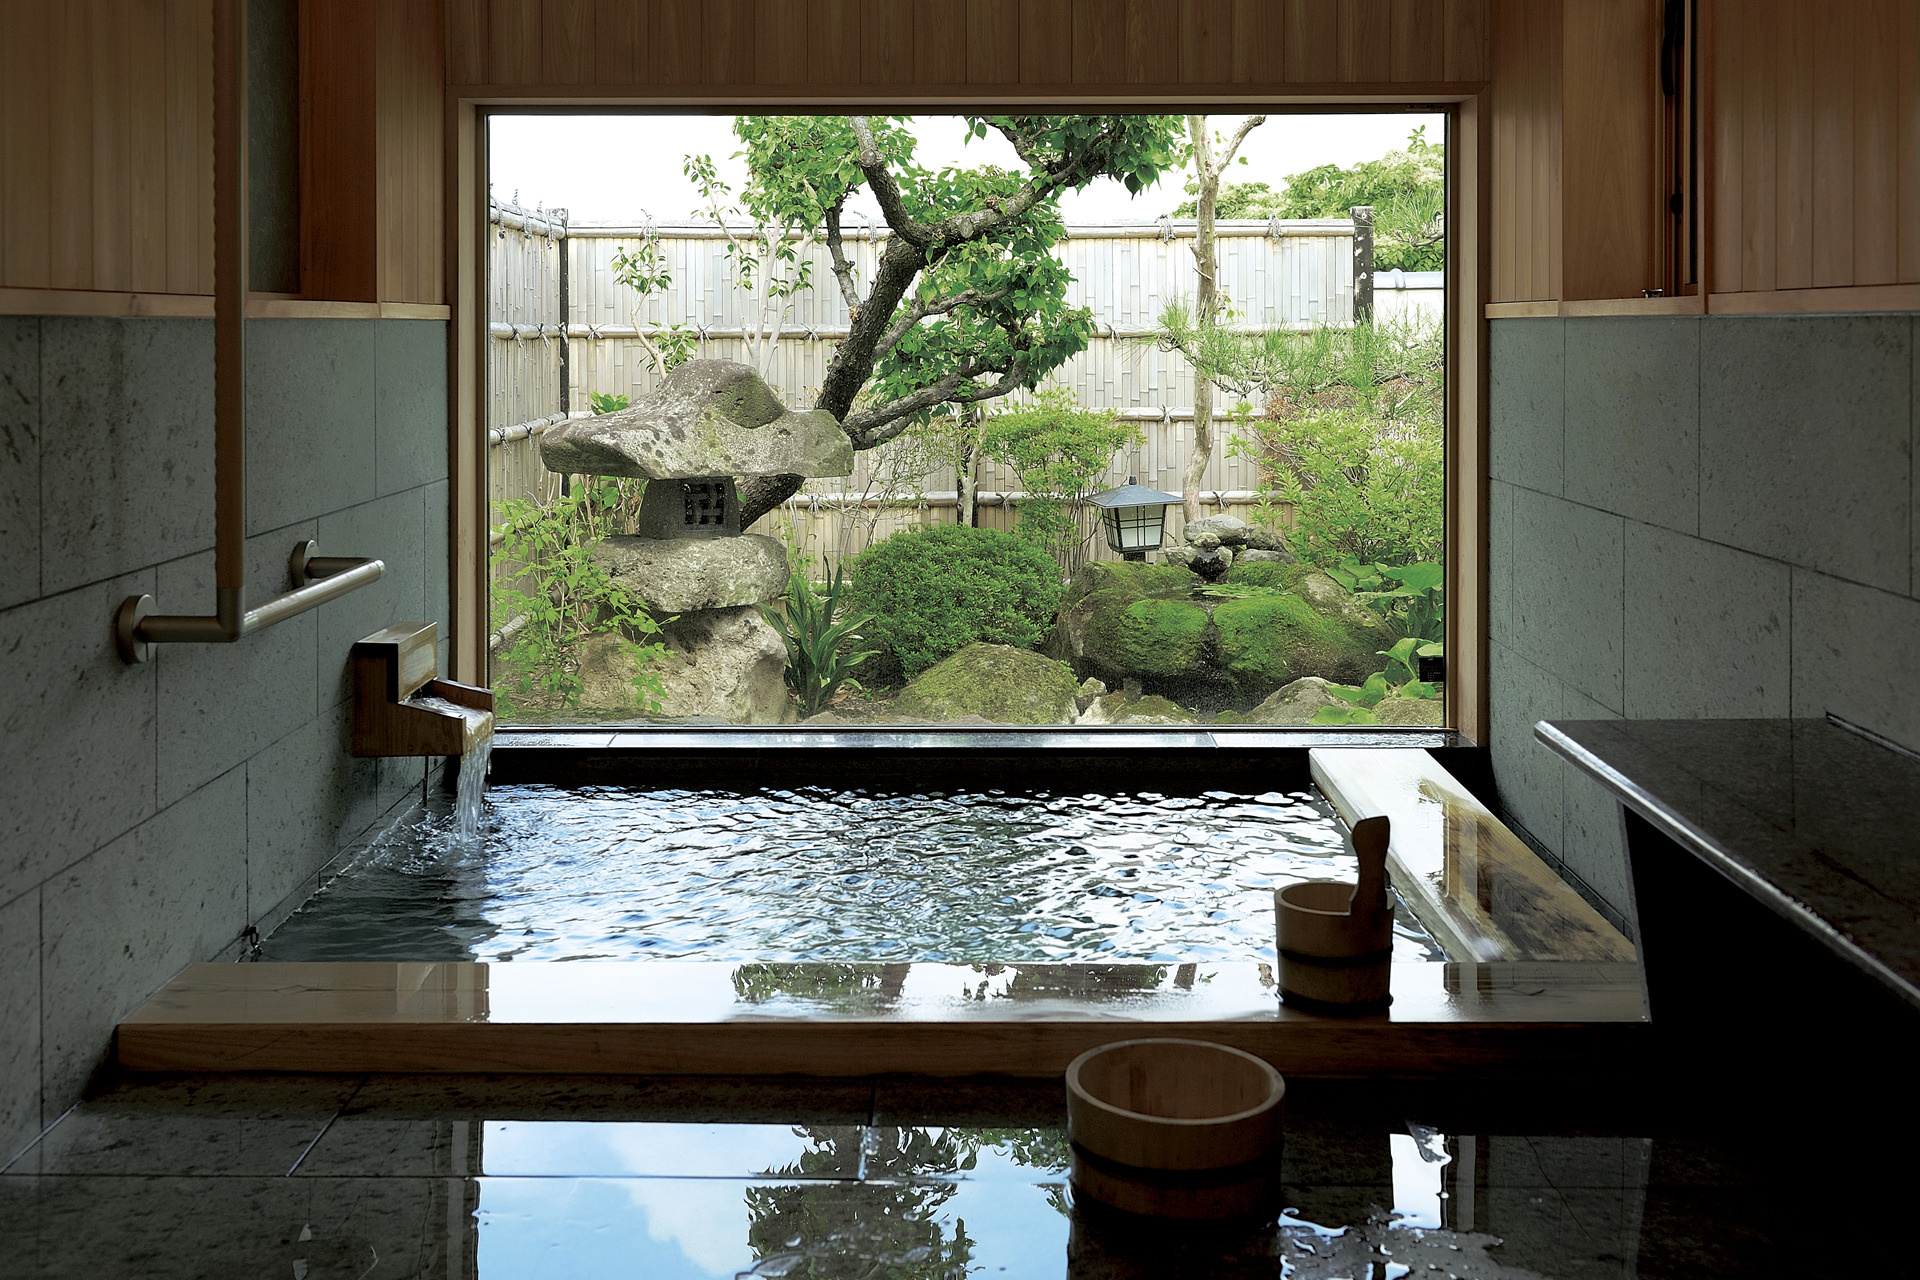 ヒノキと十和田石で仕上げた源泉掛け流しのお風呂